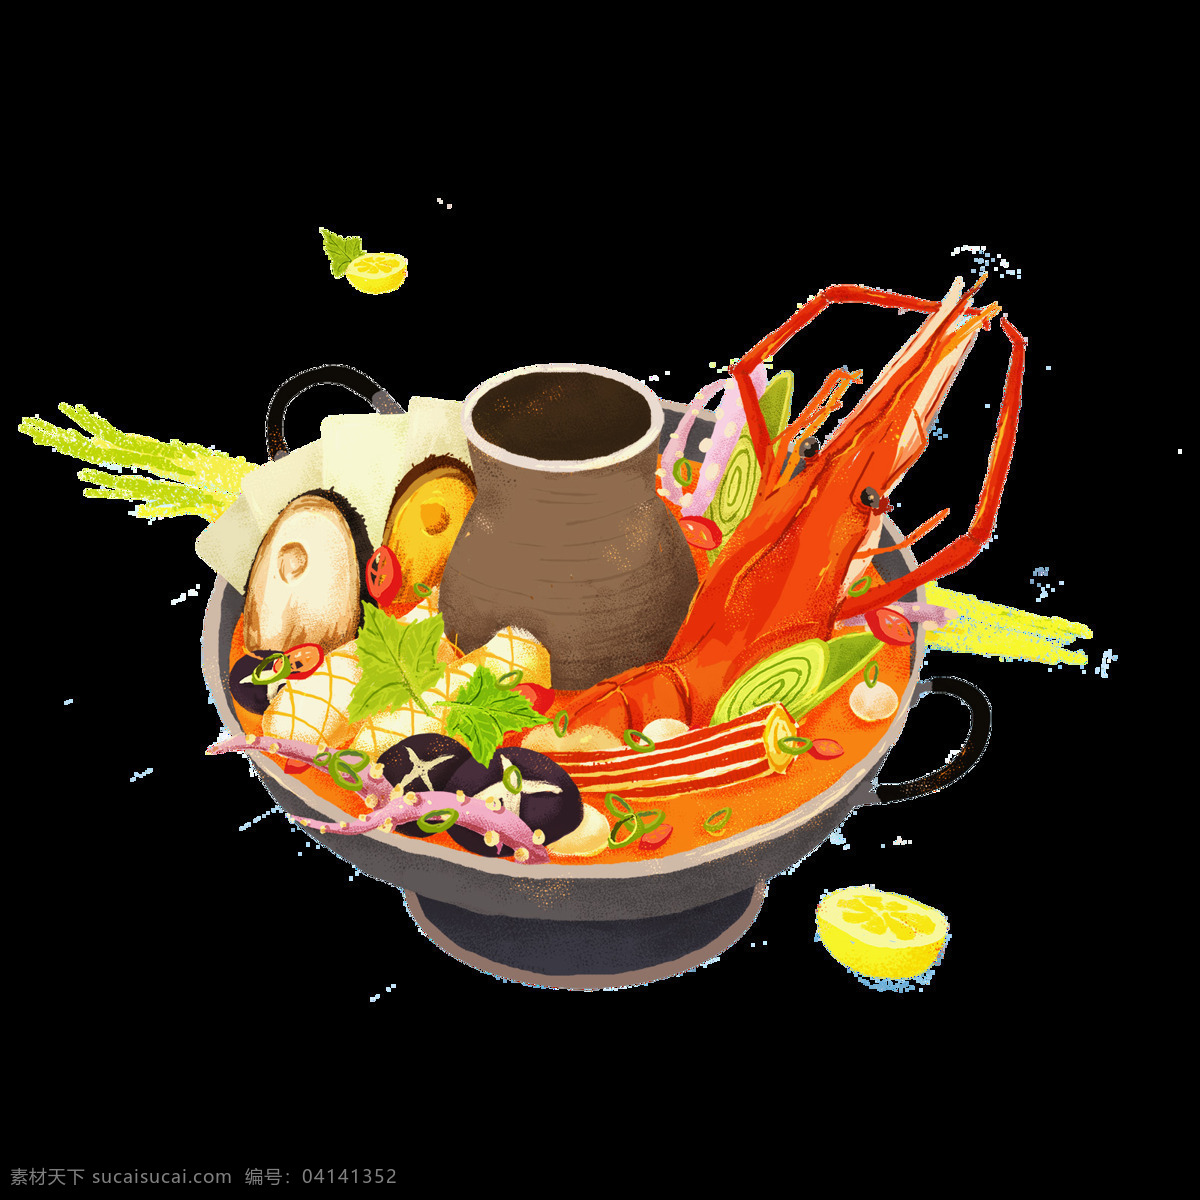 美味 海鲜 食物 元素 抠 图 背景 视频 模板 分层 海鲜砂锅 蔬菜